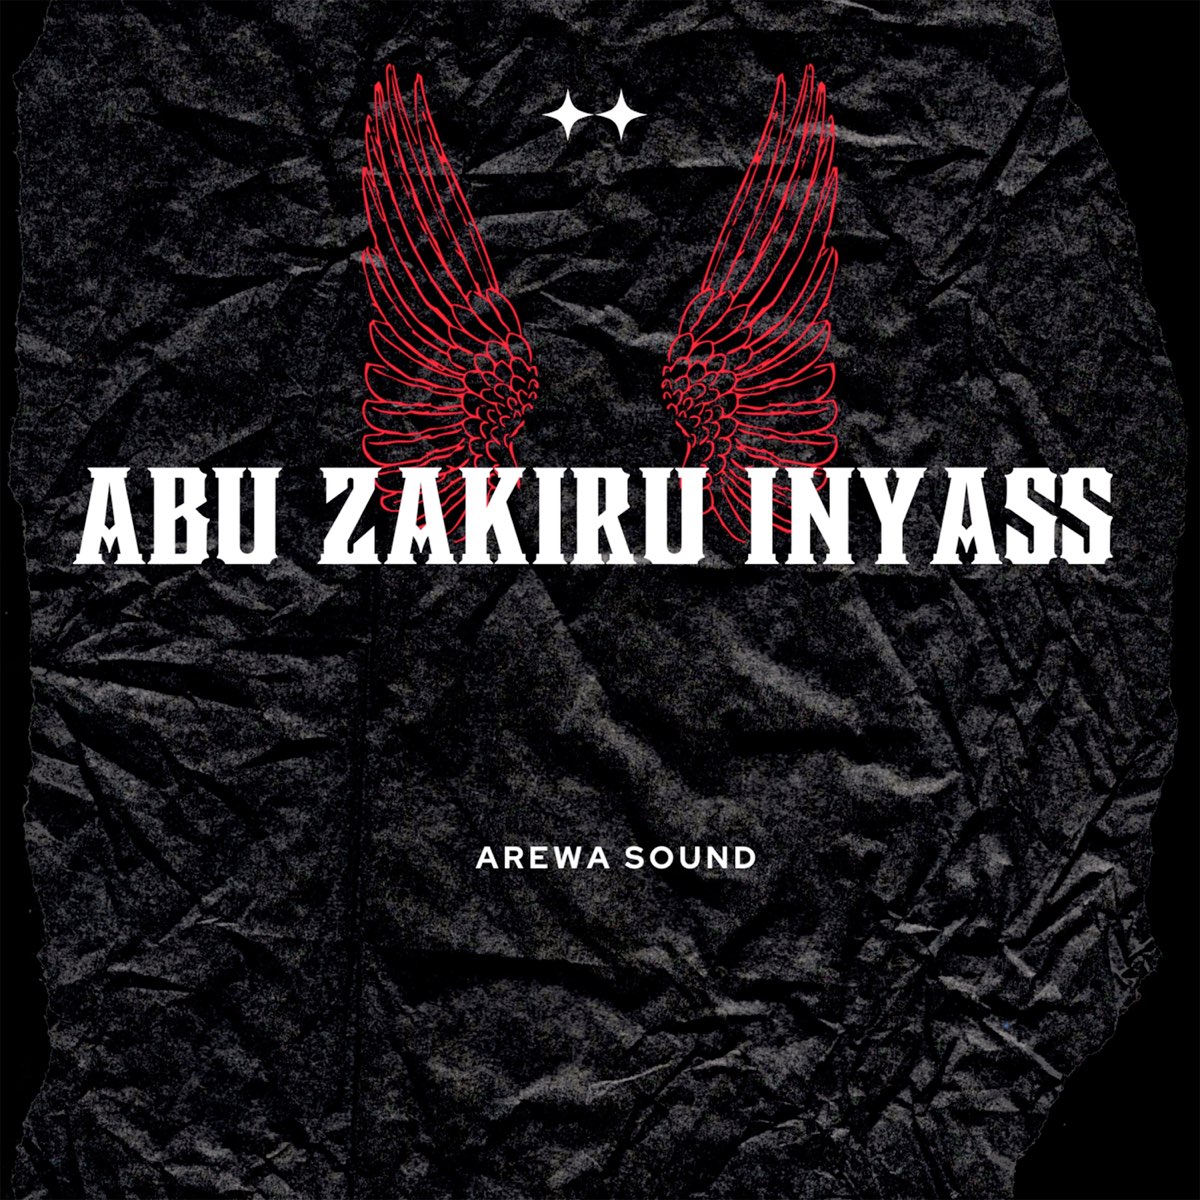 Abu Zakiru Inyass - EP by Arewa Sound on Apple Music